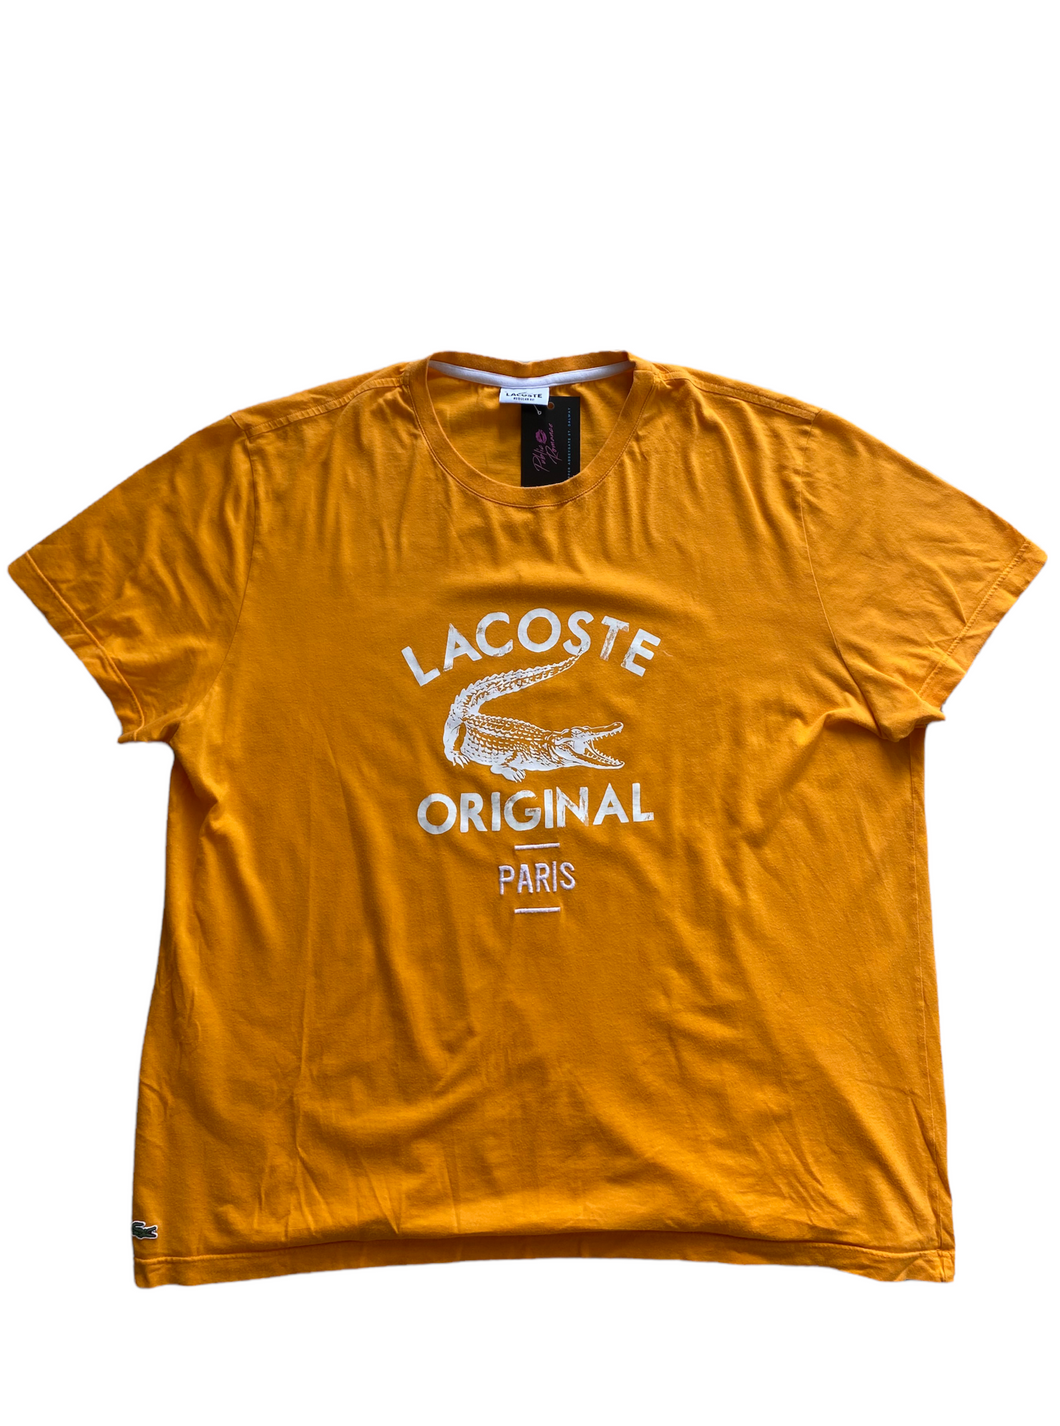 Vintage Lacoste T-Shirt (L)